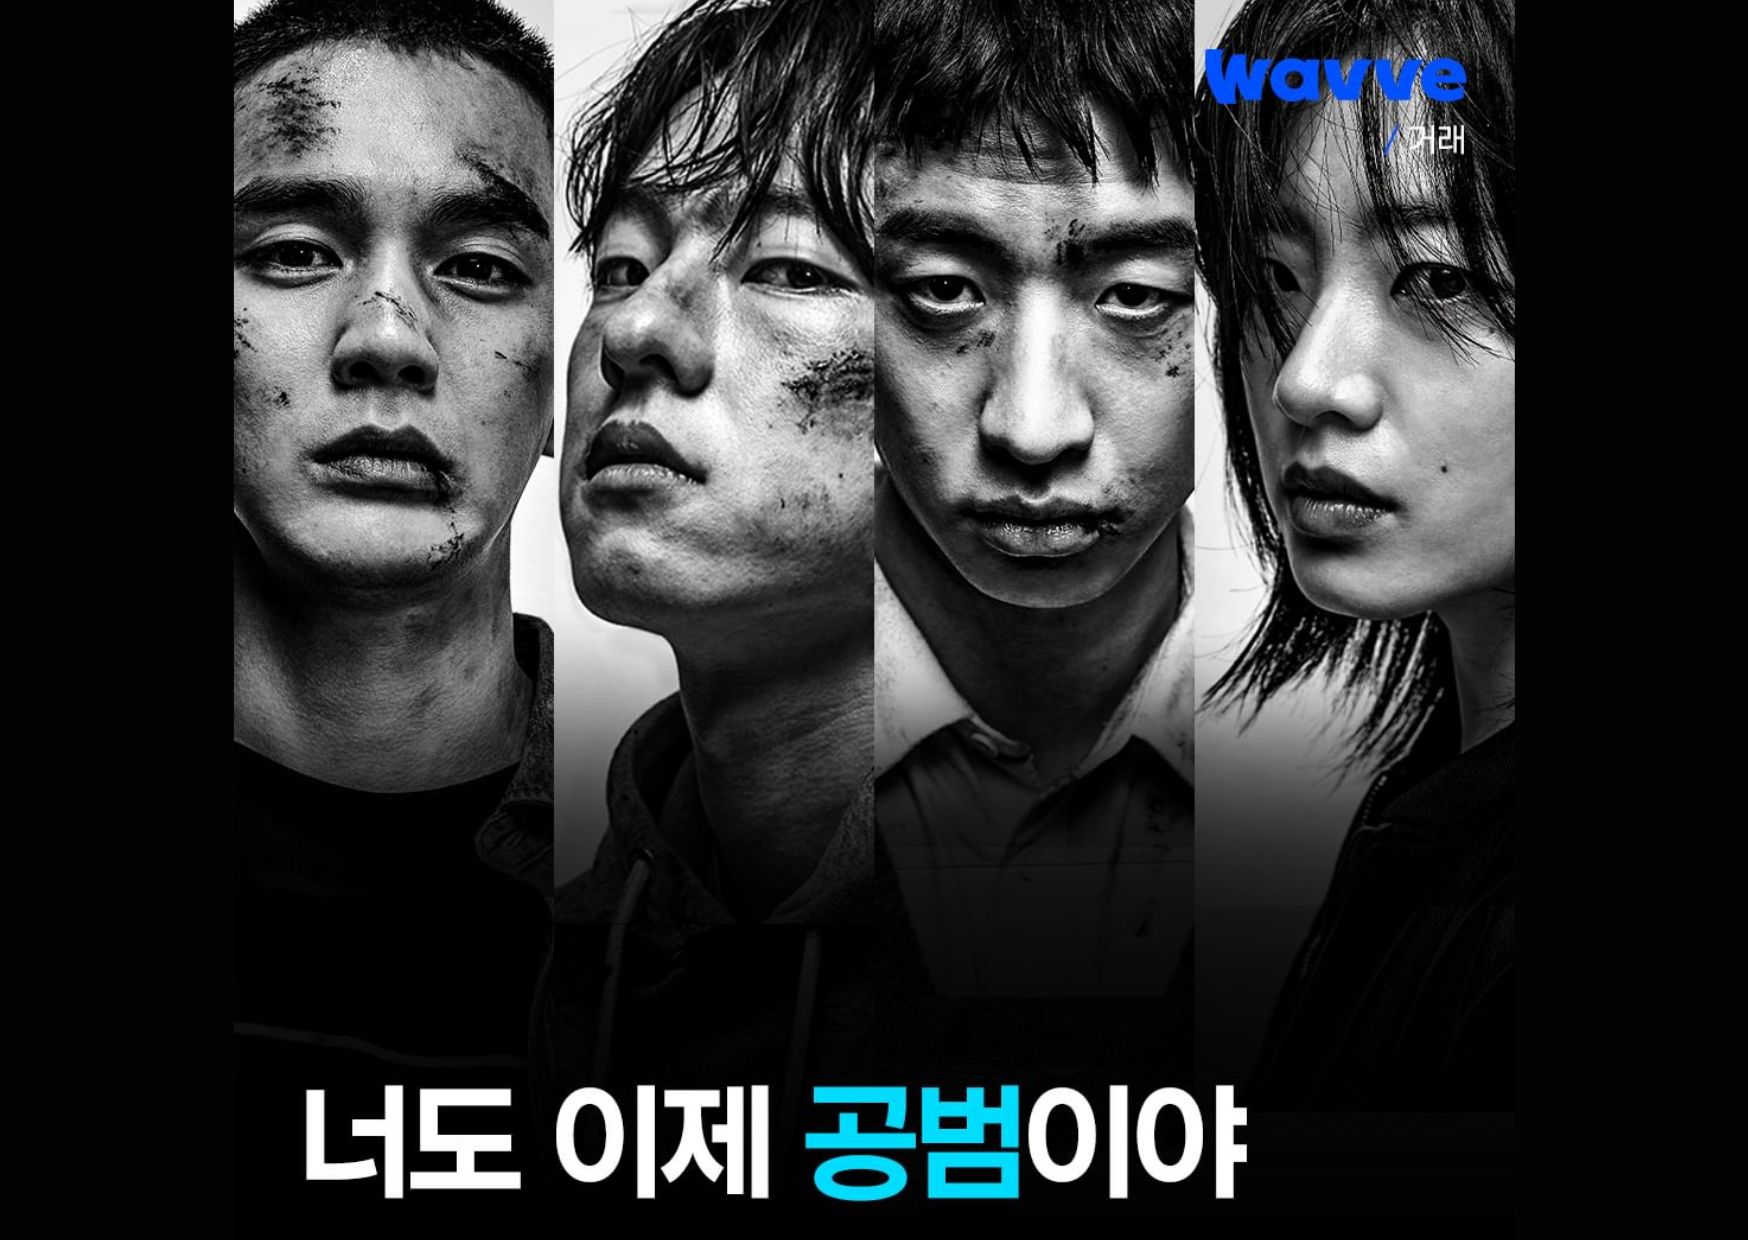 The Deal : Yoo Seung Ho, Kim Dong Hwi, dan Yoo Su Bin bekerja sama demi uang di poster terbaru